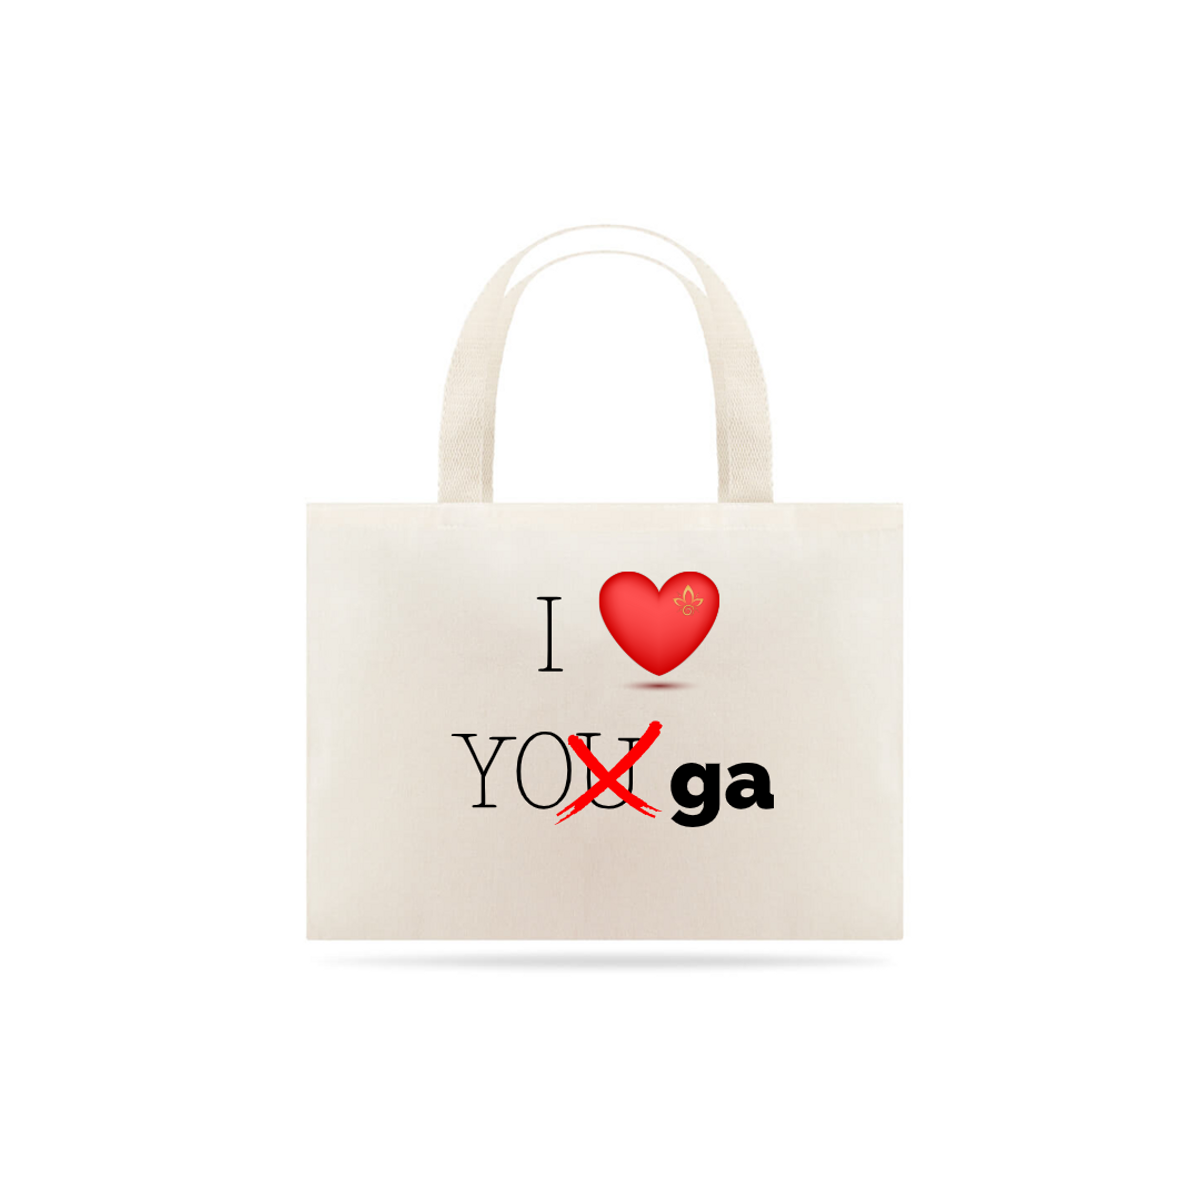 Nome do produtoEcobag Nathalia Morgana Frase I love yoga (Quality)